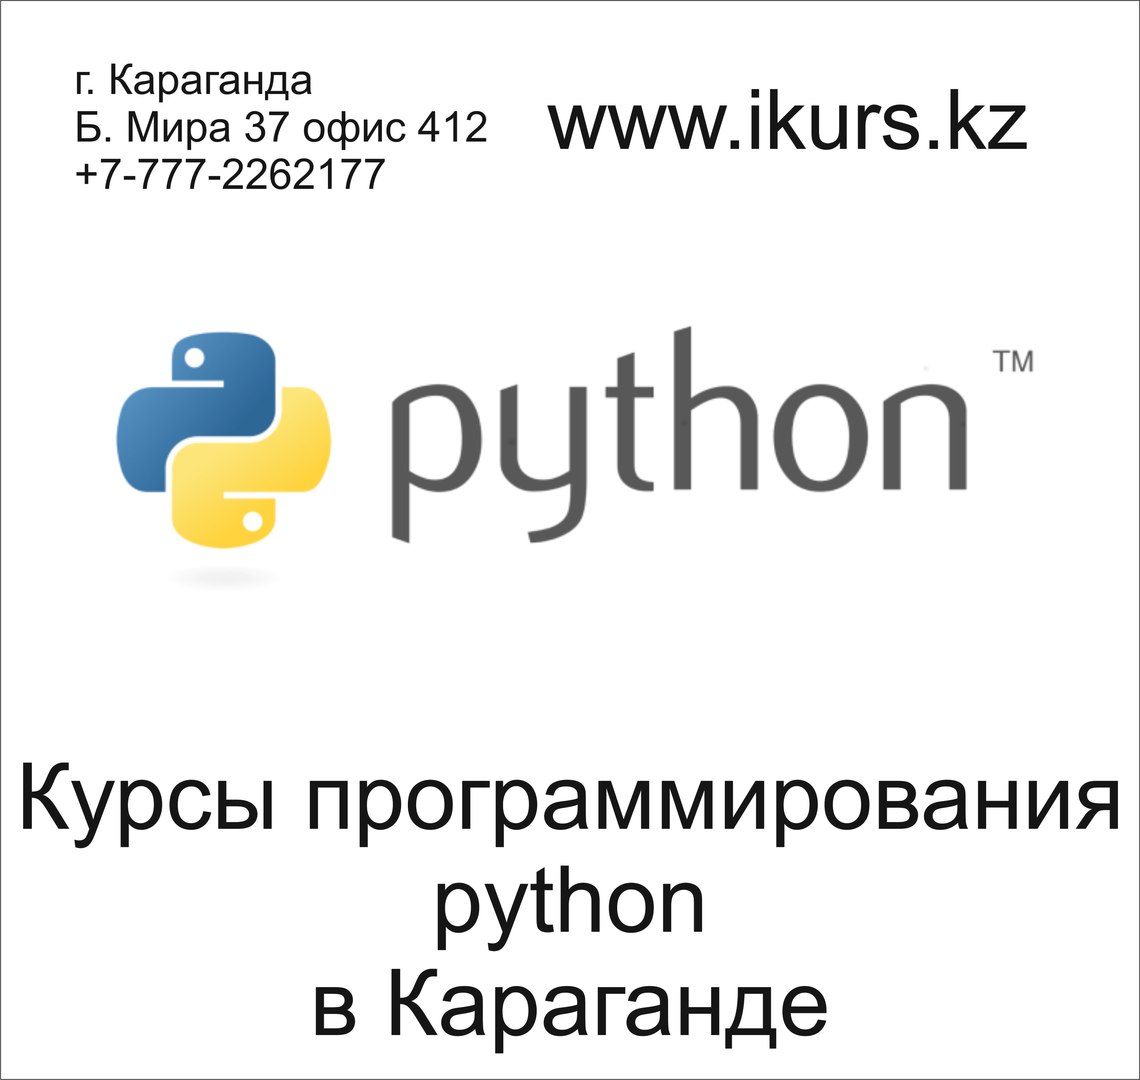 Курсы программирования на Python в Караганде в обучающем центре Ikurs